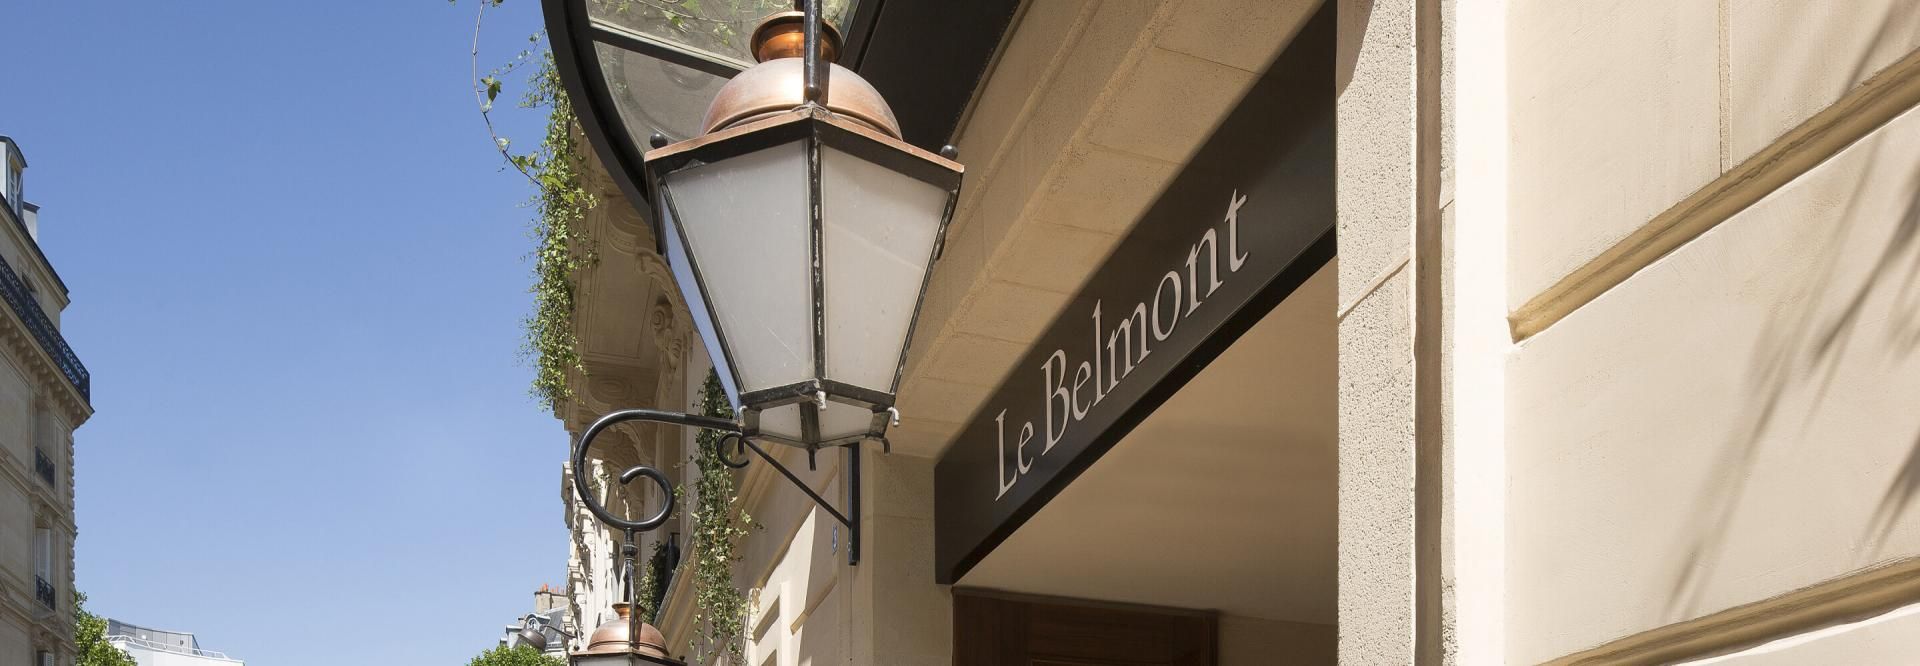 Hotel Le Belmont